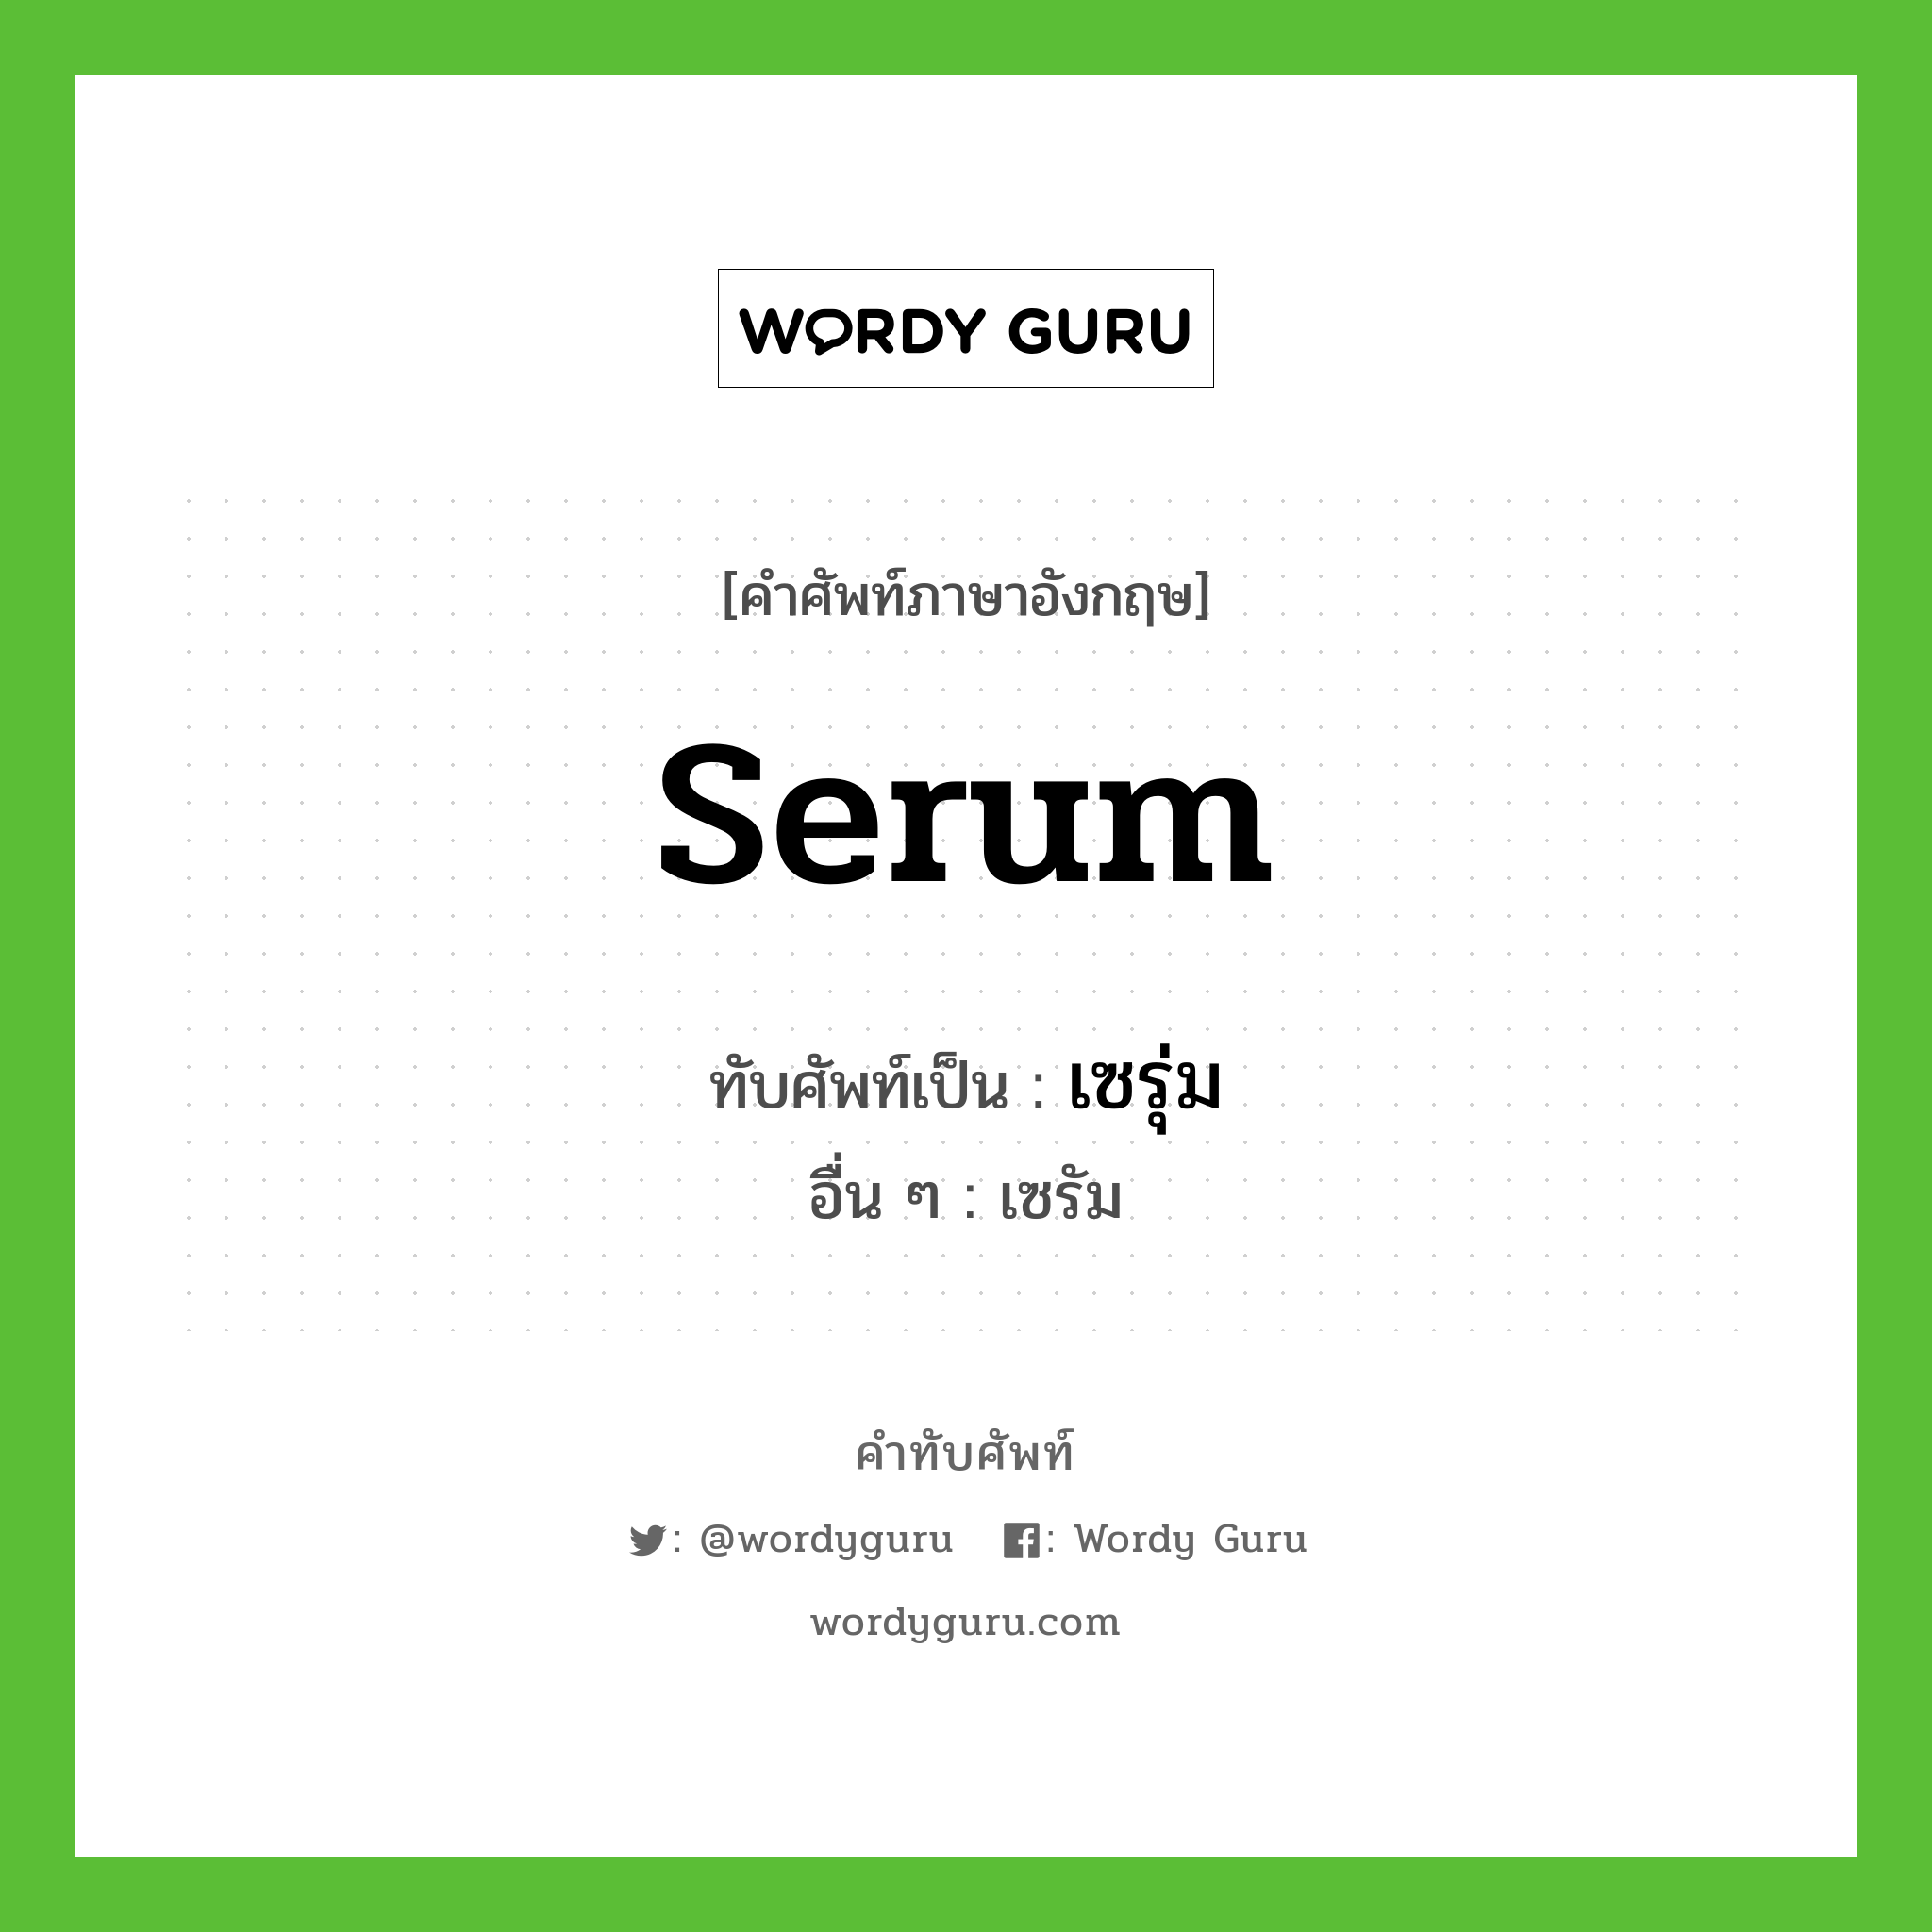 serum เขียนเป็นคำไทยว่าอะไร?, คำศัพท์ภาษาอังกฤษ serum ทับศัพท์เป็น เซรุ่ม อื่น ๆ เซรัม